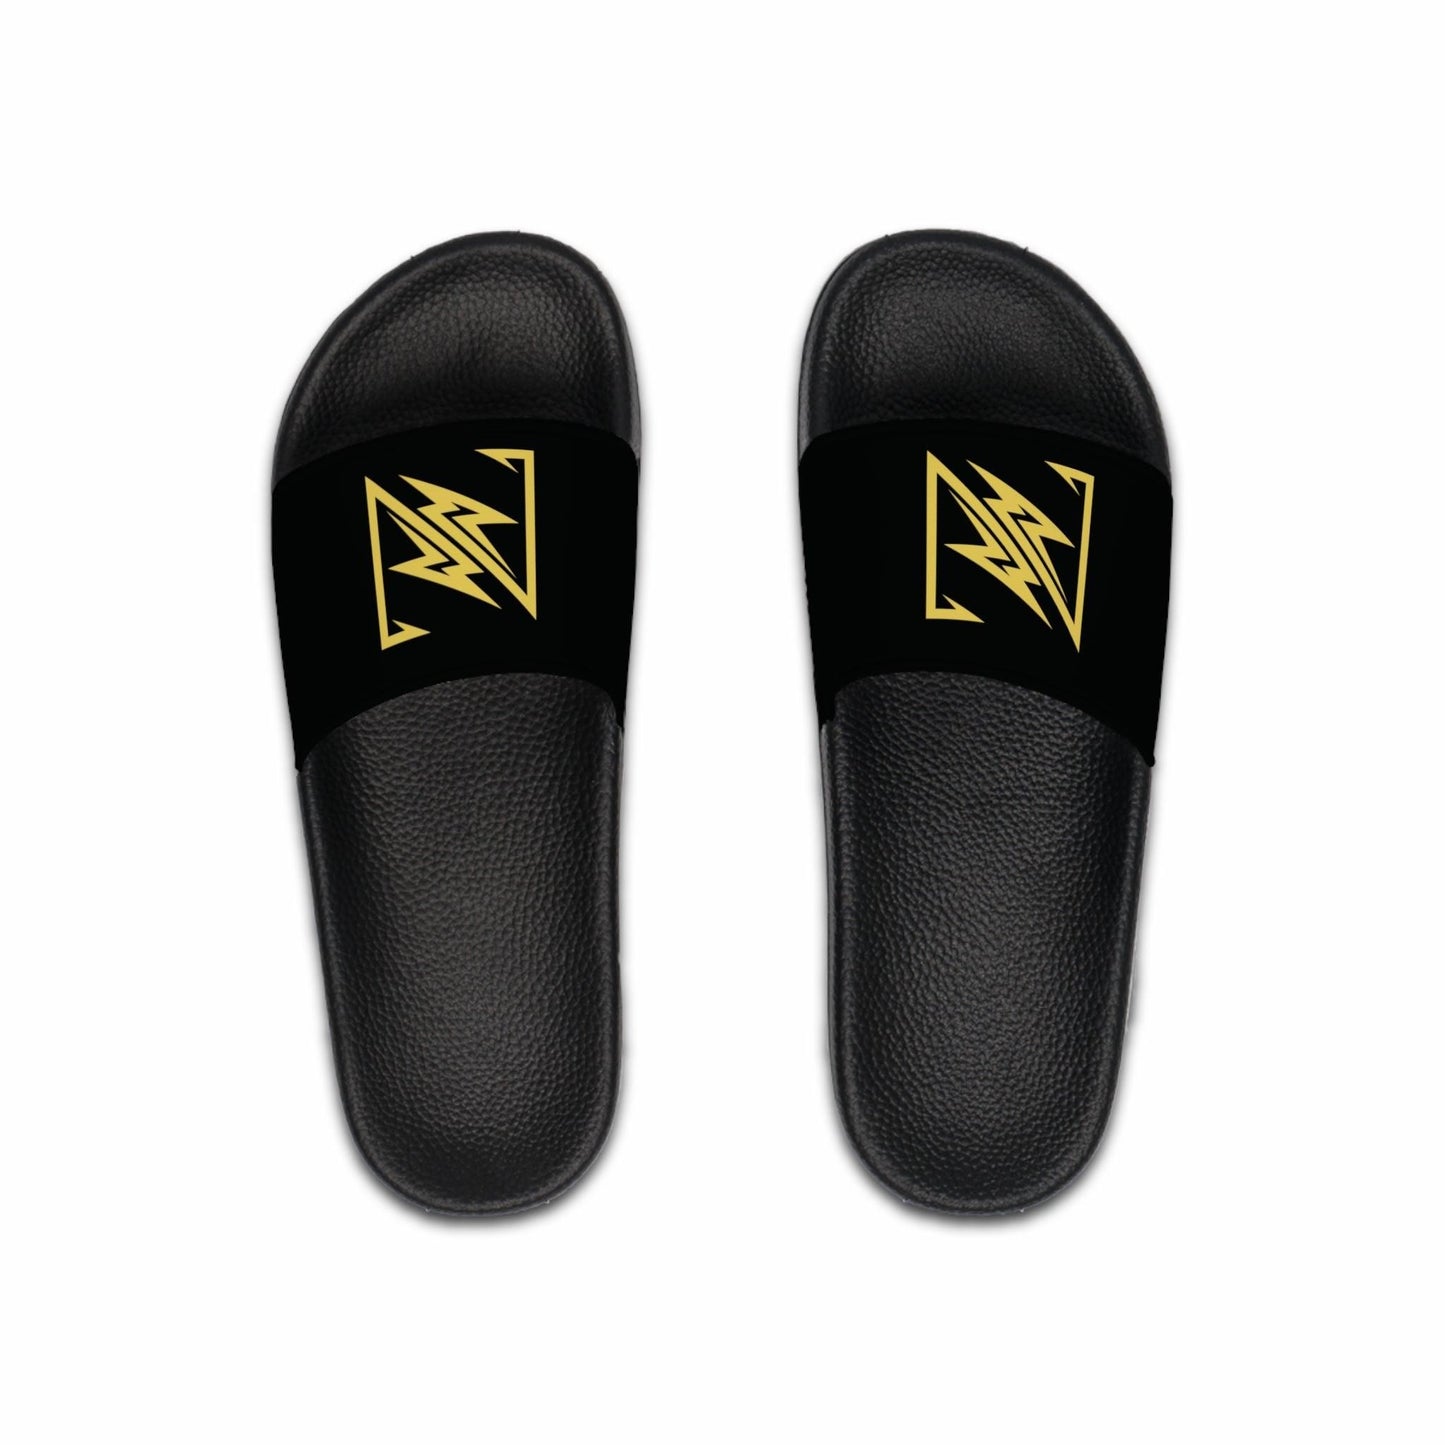 nx vogue Men's Slide Sandals Shoes Black sole US 7 